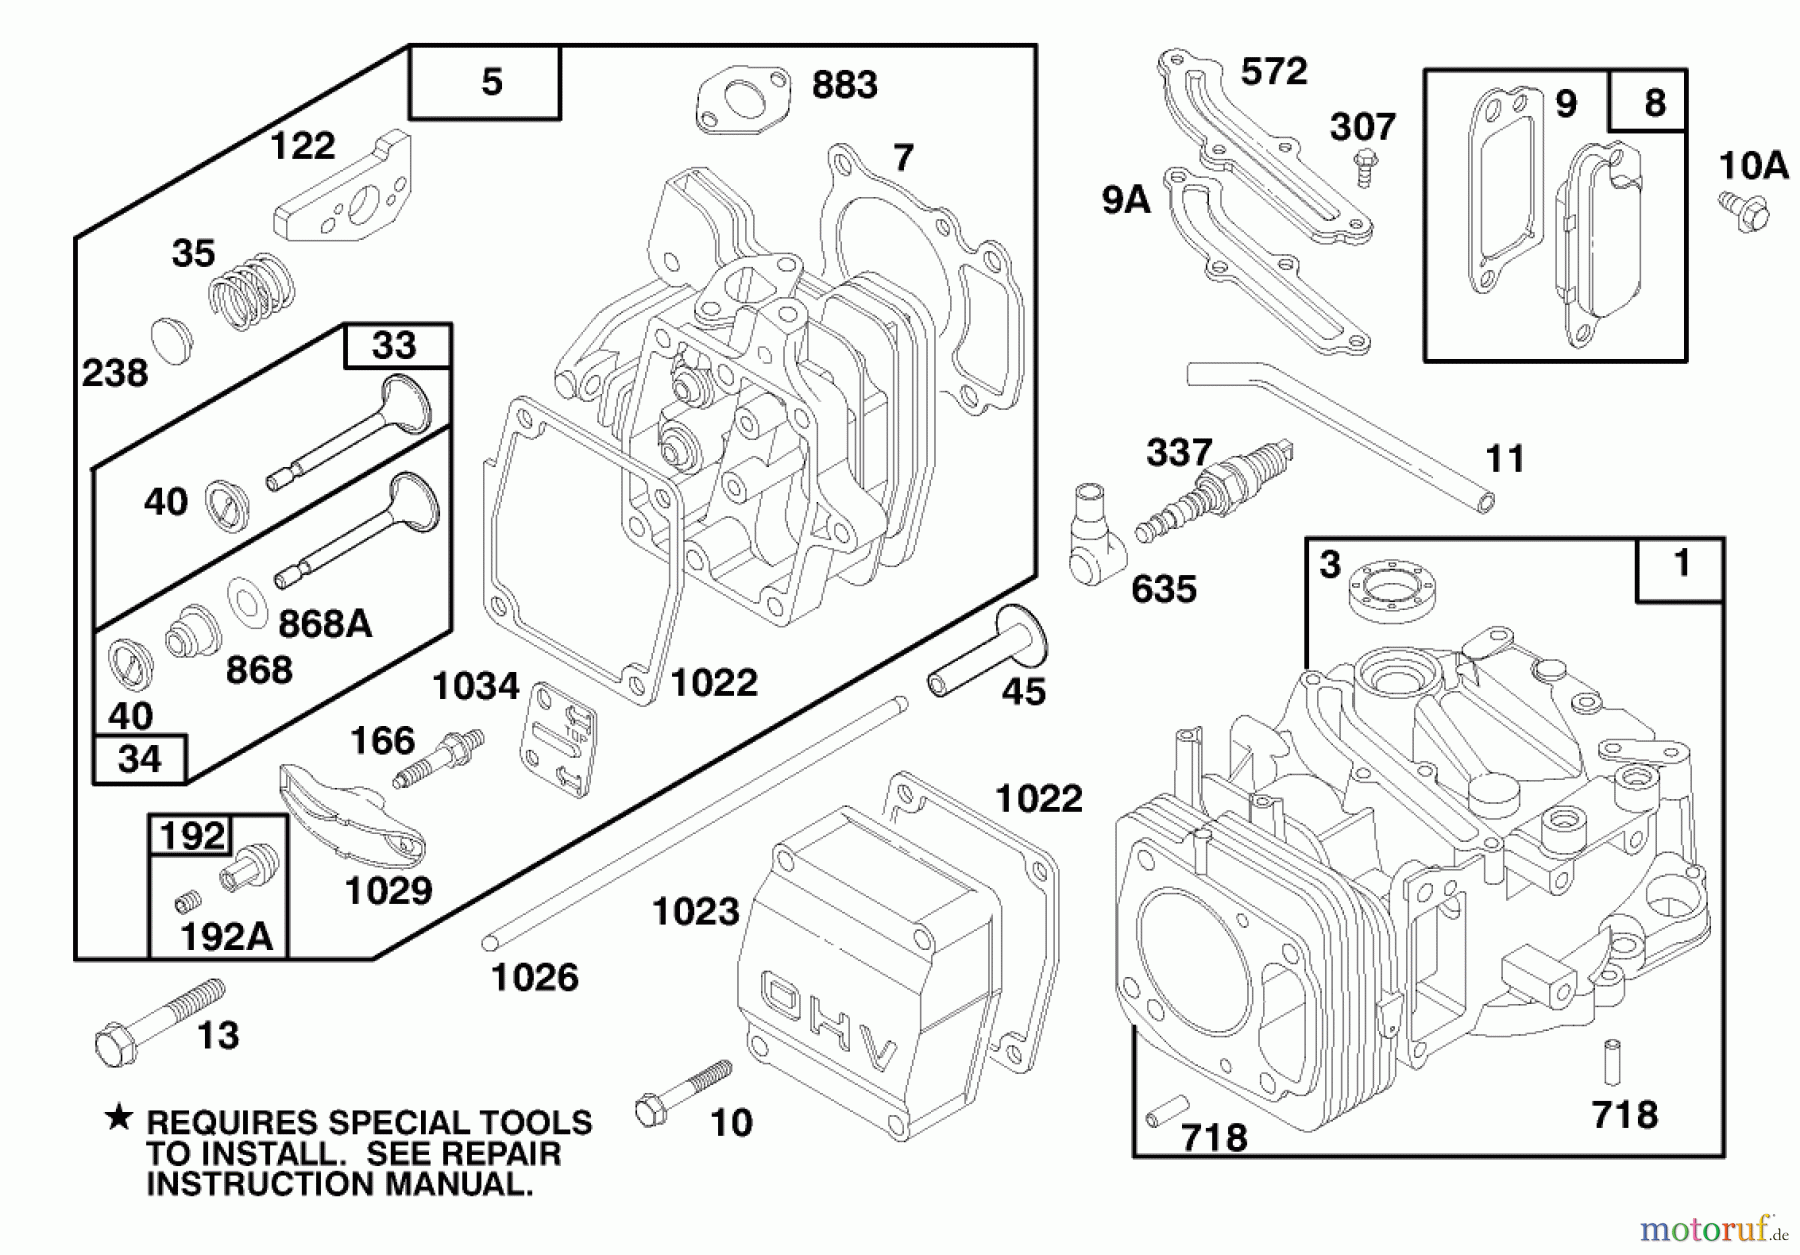  Toro Neu Mowers, Walk-Behind Seite 1 20464 - Toro Super Recycler Lawnmower, 1996 (6900001-6999999) ENGINE GTS 150 #1